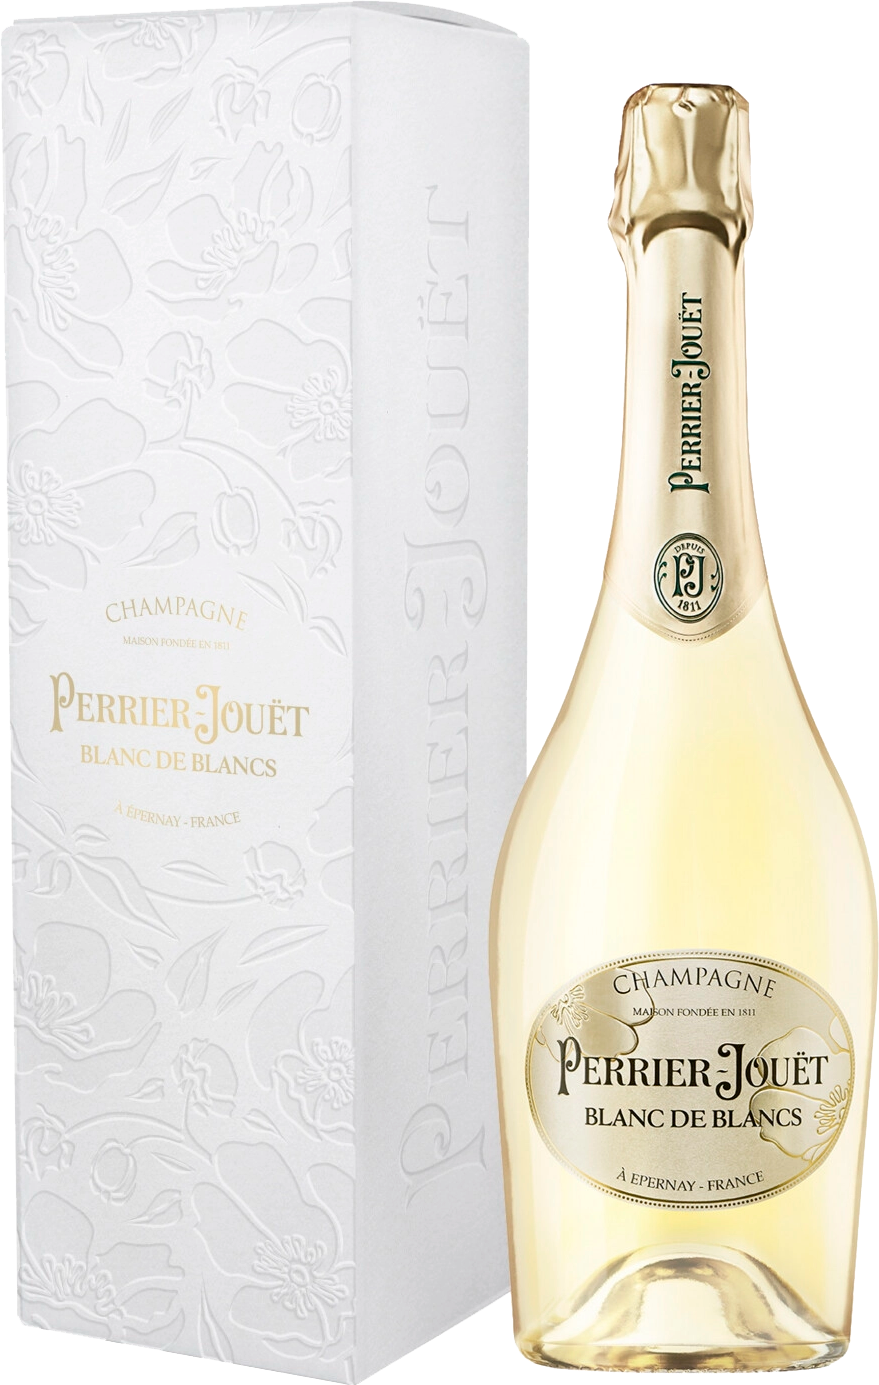 Perrier-Jouёt Blanc de Blancs Brut Champagne AOC barfontarc blanc de blancs brut champagne аoc coopérative vinicole de la région de baroville